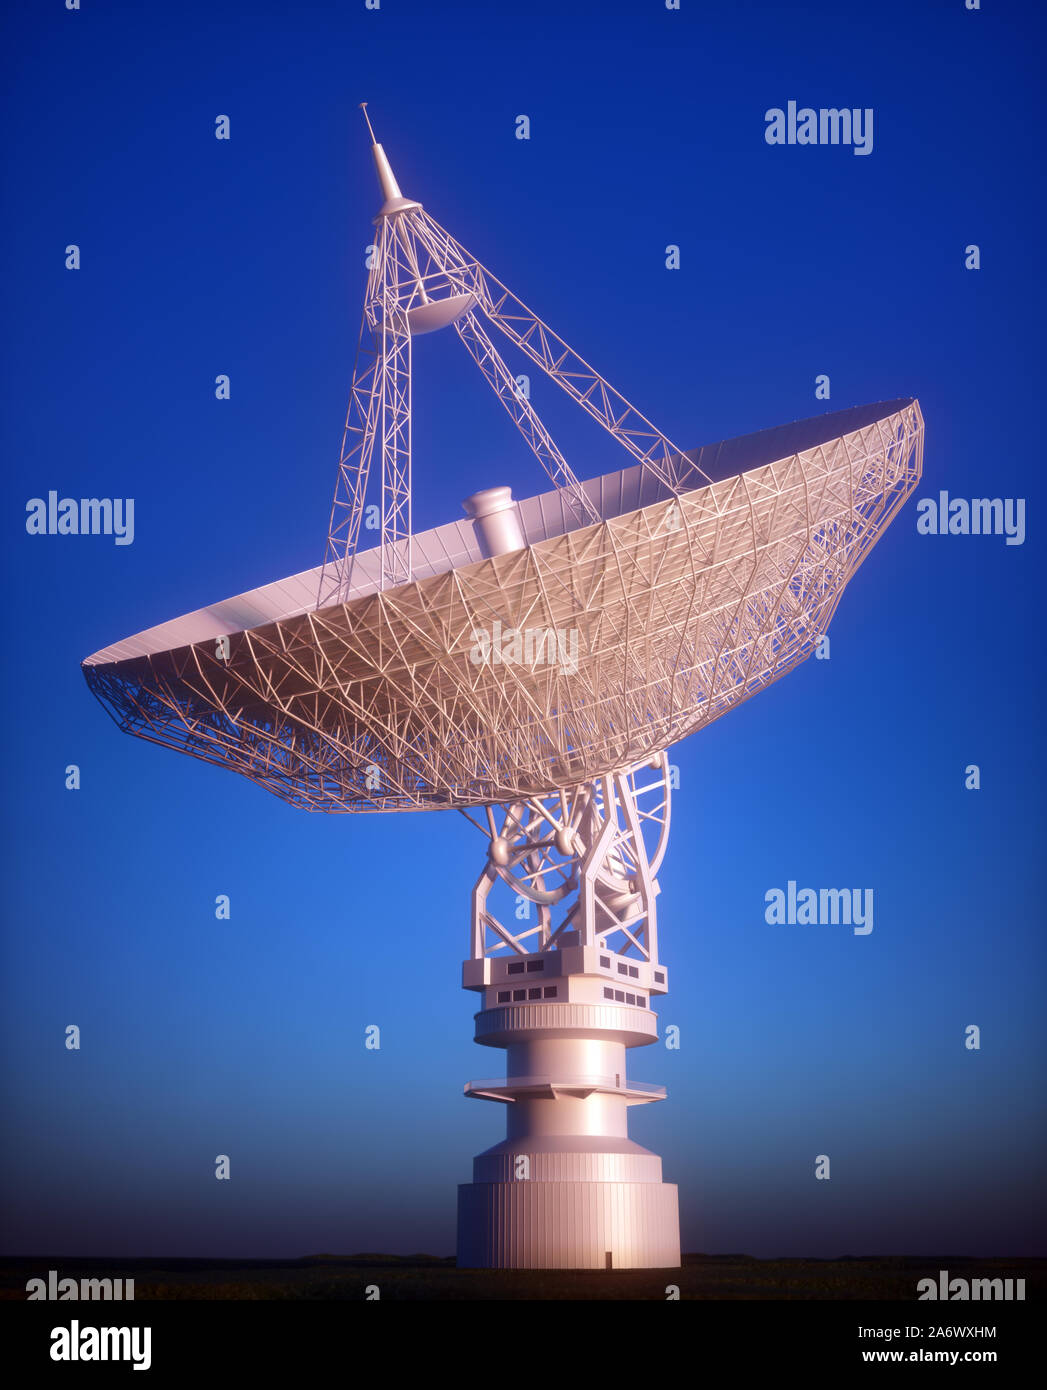 Riesige Satellitenantenne Teller für Kommunikation und Empfang des Signals aus dem Planeten Erde. Sternwarte auf der Suche nach Radio Signal im Raum bei Sonnenuntergang. Stockfoto